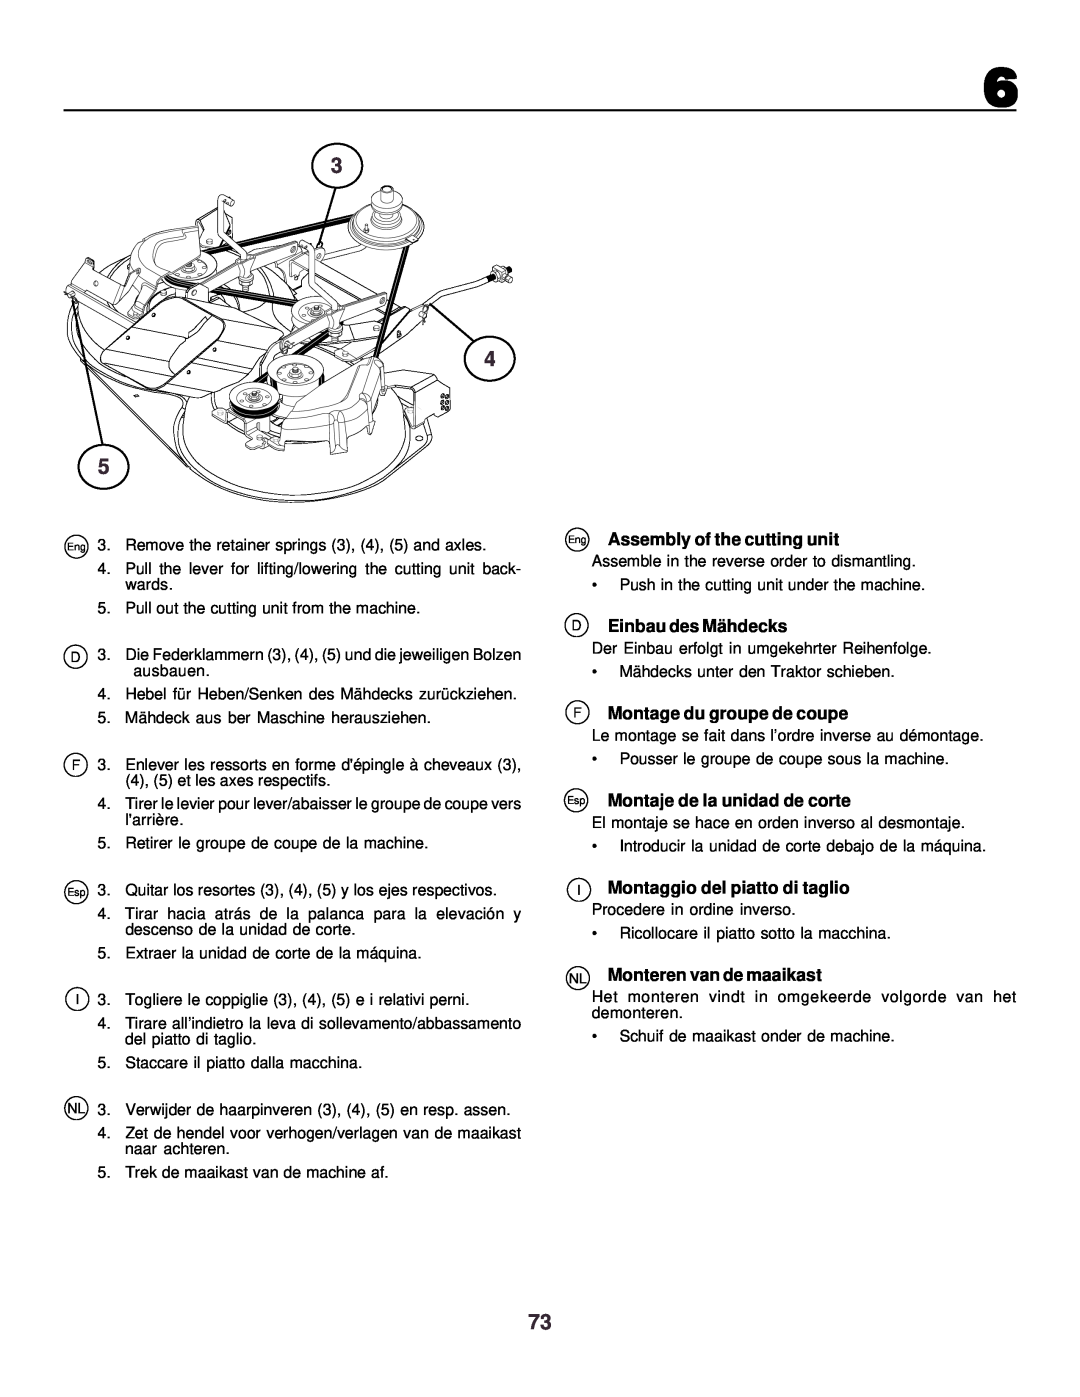 Husqvarna CTH130 instruction manual Eng Assembly of the cutting unit, D Einbau des Mä hdecks, F Montage du groupe de coupe 